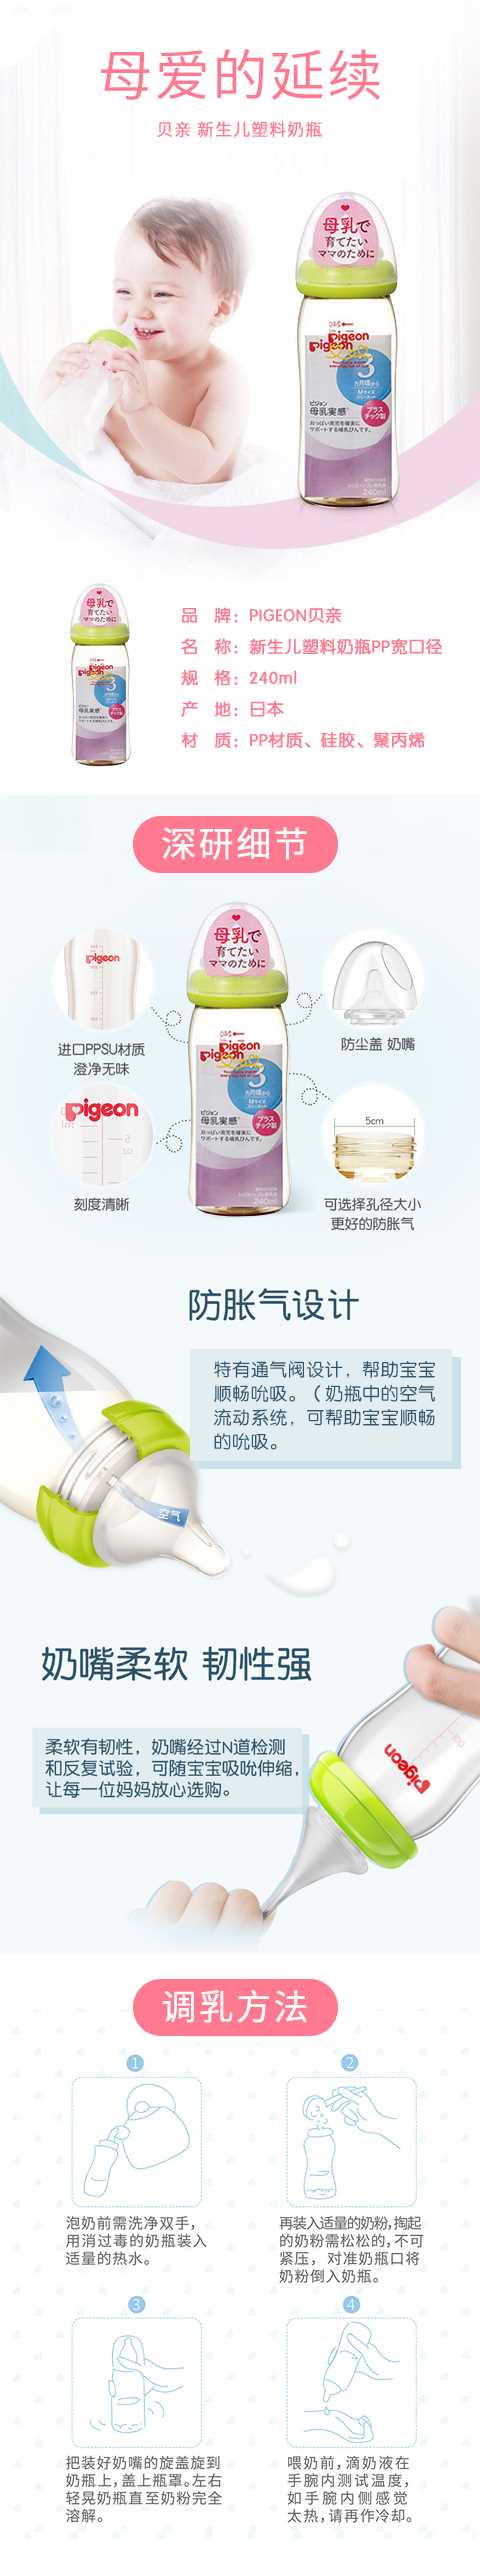 PIGEON贝亲-新生儿塑料奶瓶-PP宽口径塑料奶瓶-耐摔仿-母乳自然实感240ml-绿色_01.jpg